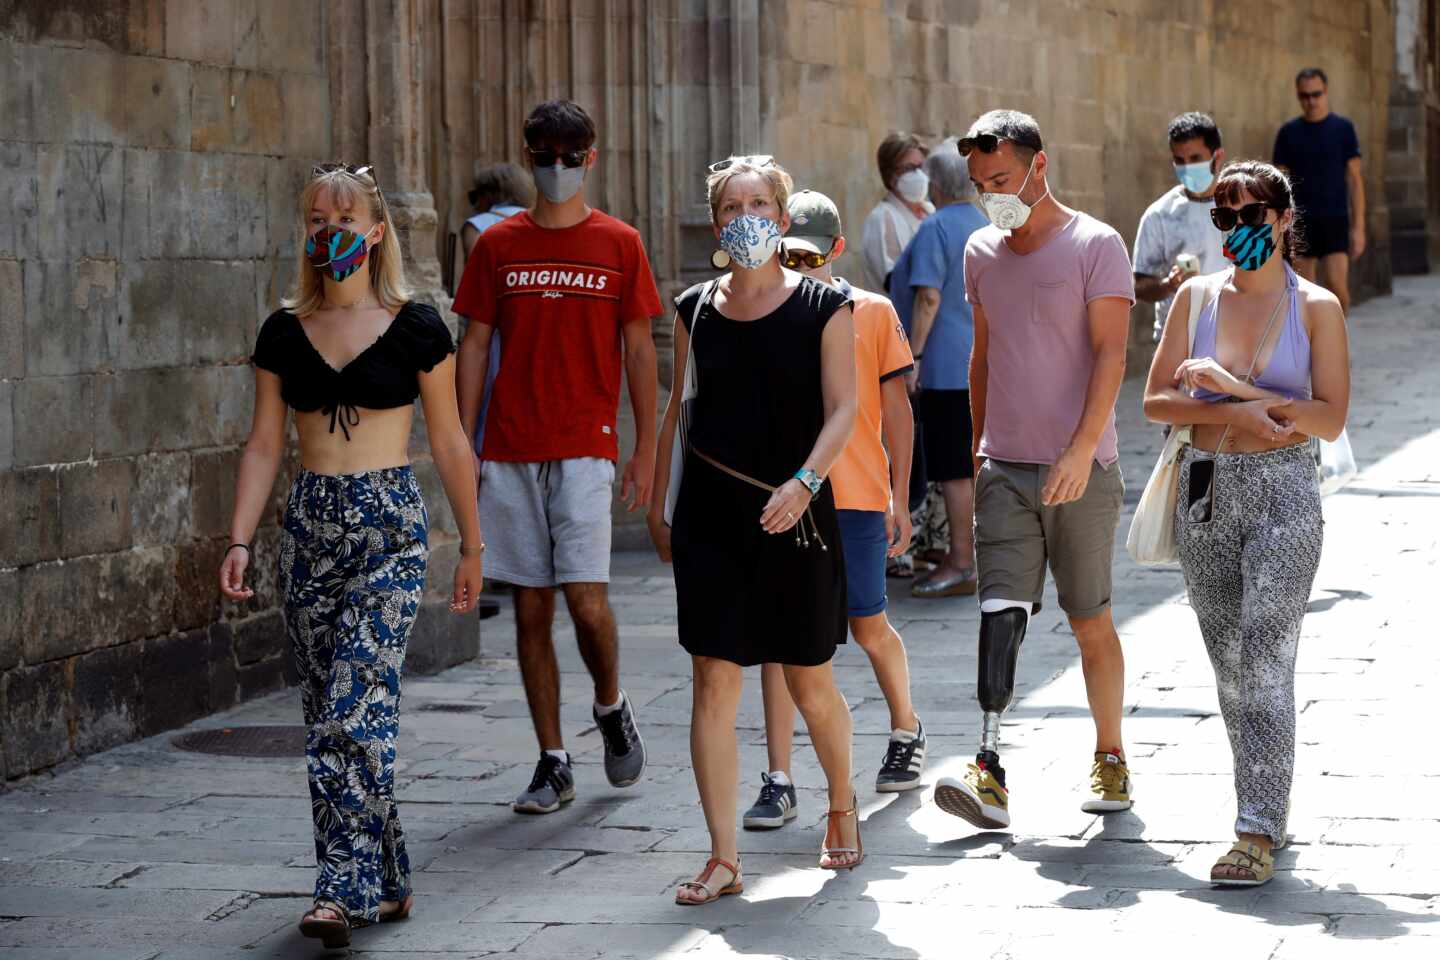 Cataluña registra 1.547 contagios en 24 horas, 197 más que el día anterior